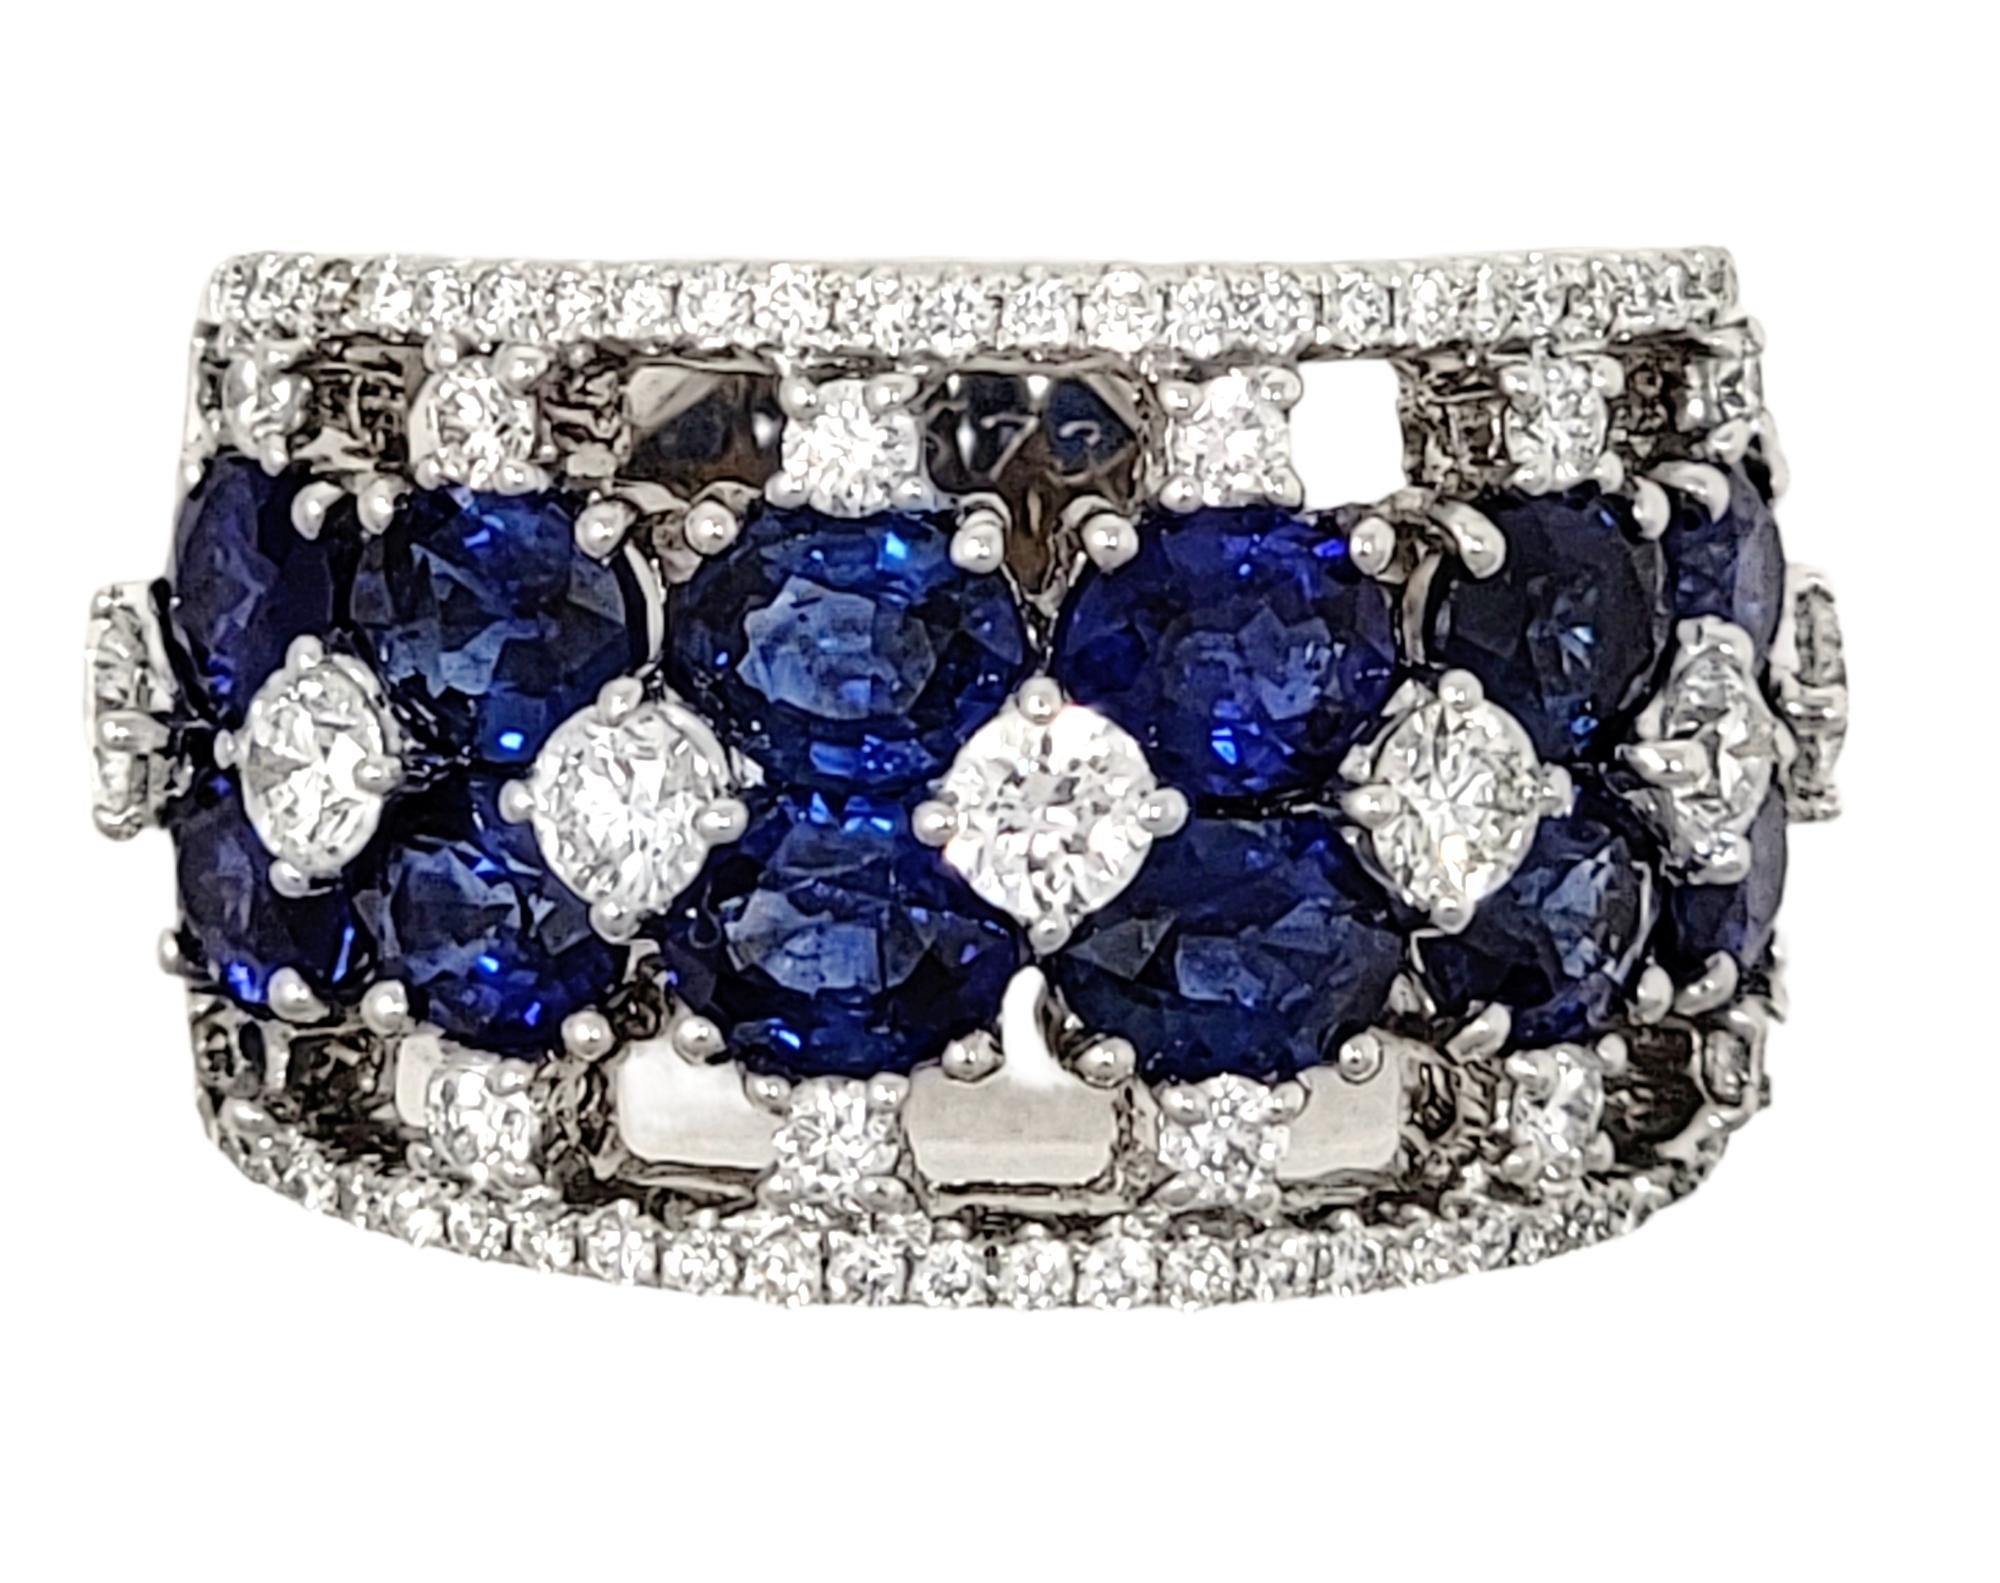 Ringgröße: 6.5

Der atemberaubend funkelnde Ring aus Saphir und Diamant wird Ihren Finger mit unbestreitbarer Schönheit erfüllen. Dieses erstaunliche Stück ist mit strahlend weißen Diamanten und funkelnden blauen Saphiren besetzt, die in mehreren